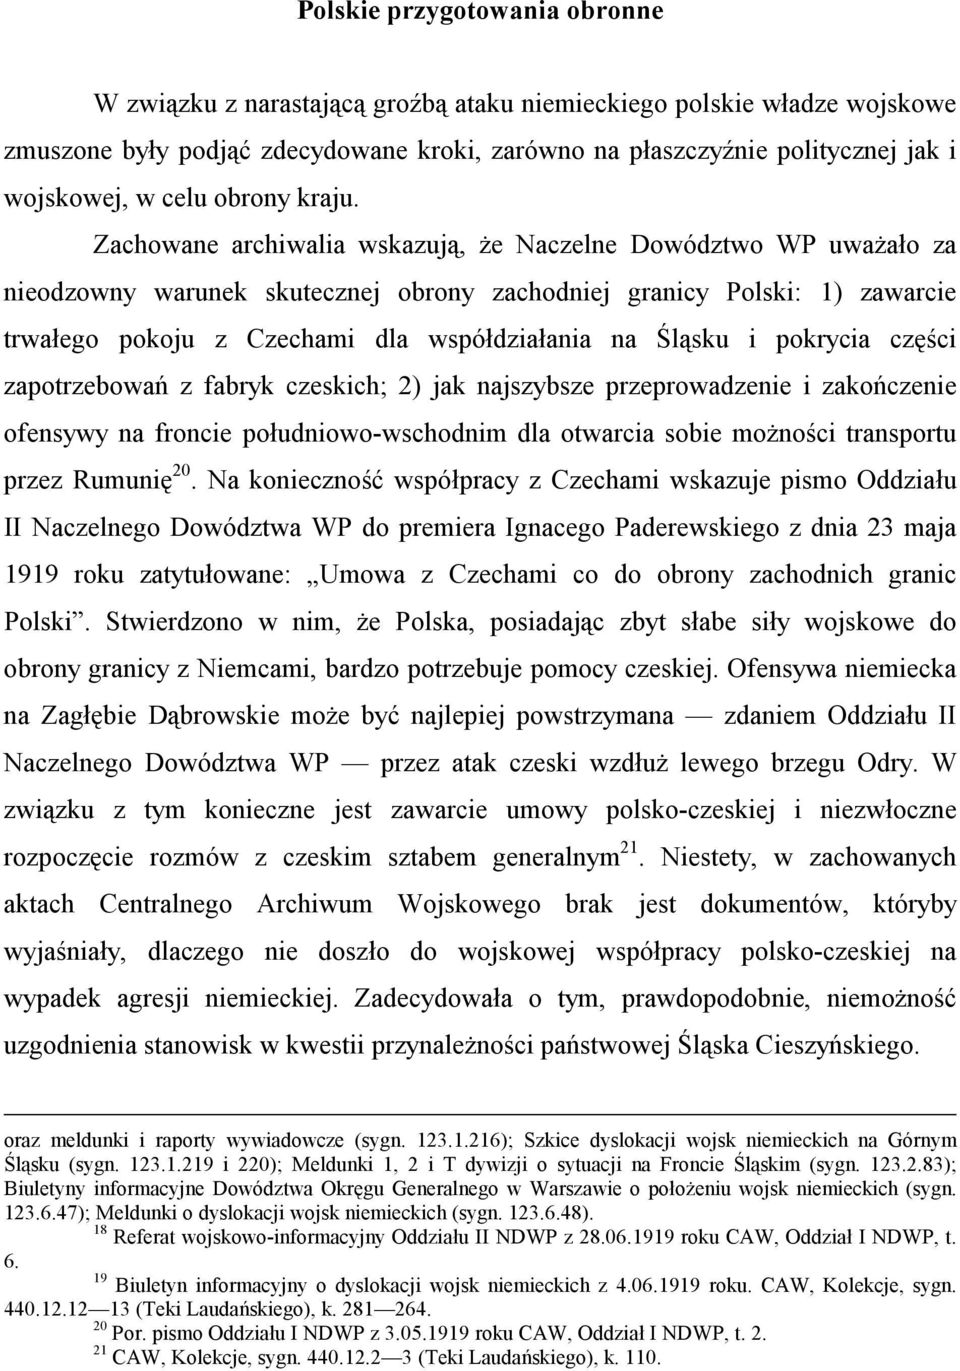 Zachowane archiwalia wskazują, że Naczelne Dowództwo WP uważało za nieodzowny warunek skutecznej obrony zachodniej granicy Polski: 1) zawarcie trwałego pokoju z Czechami dla współdziałania na Śląsku